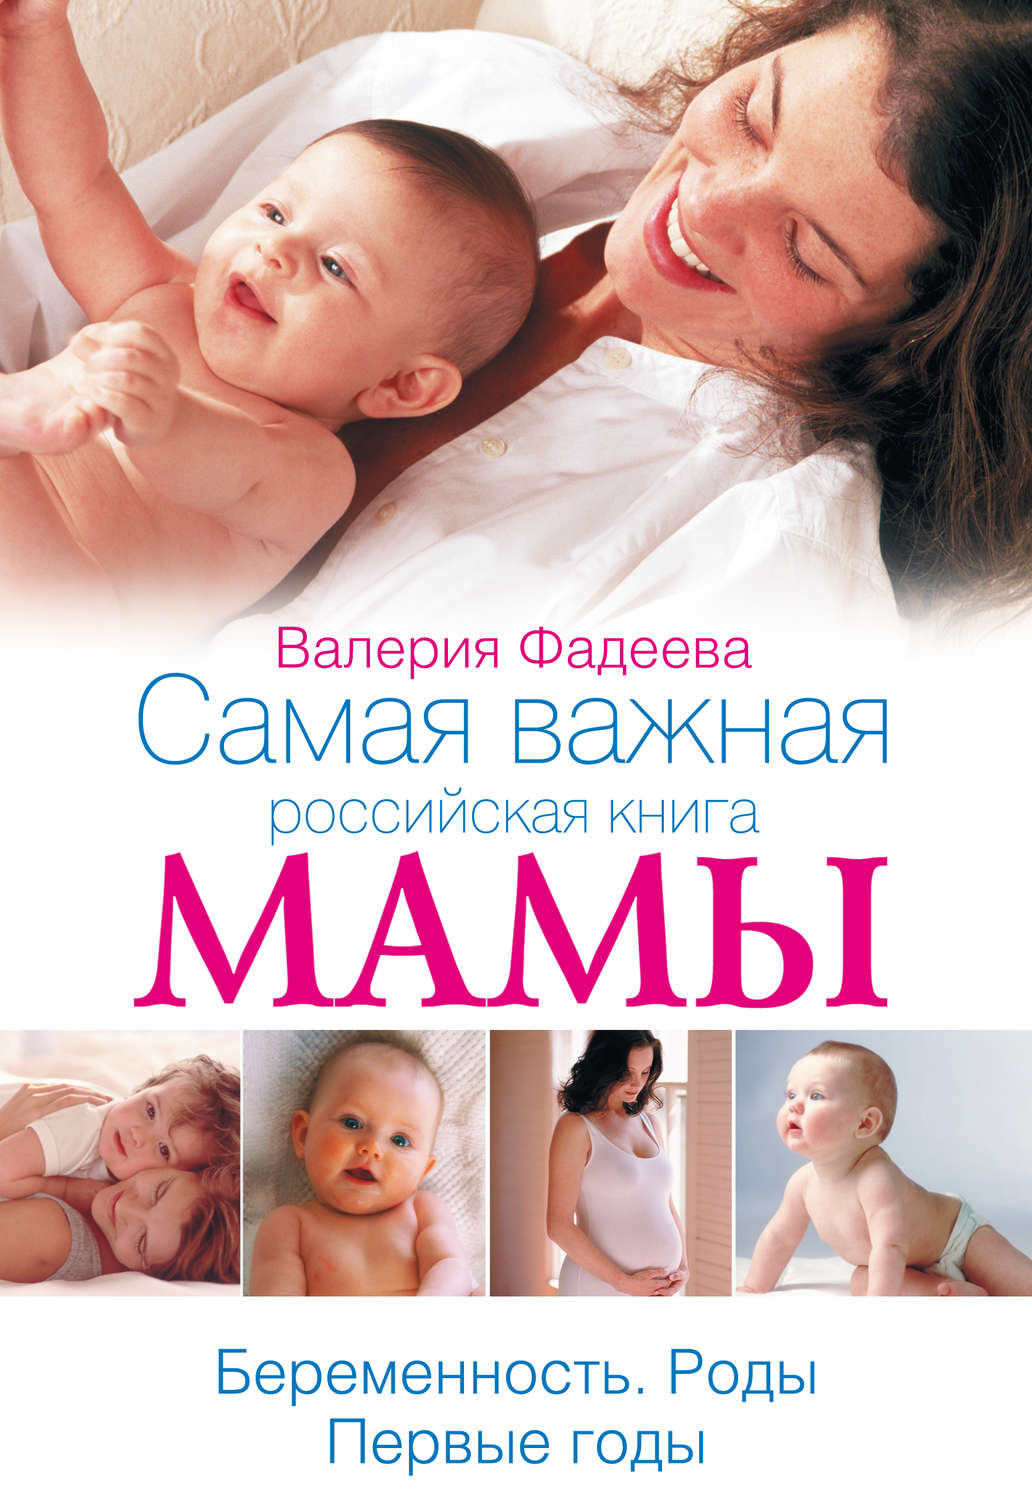 Самая важная российская книга мамы скачать